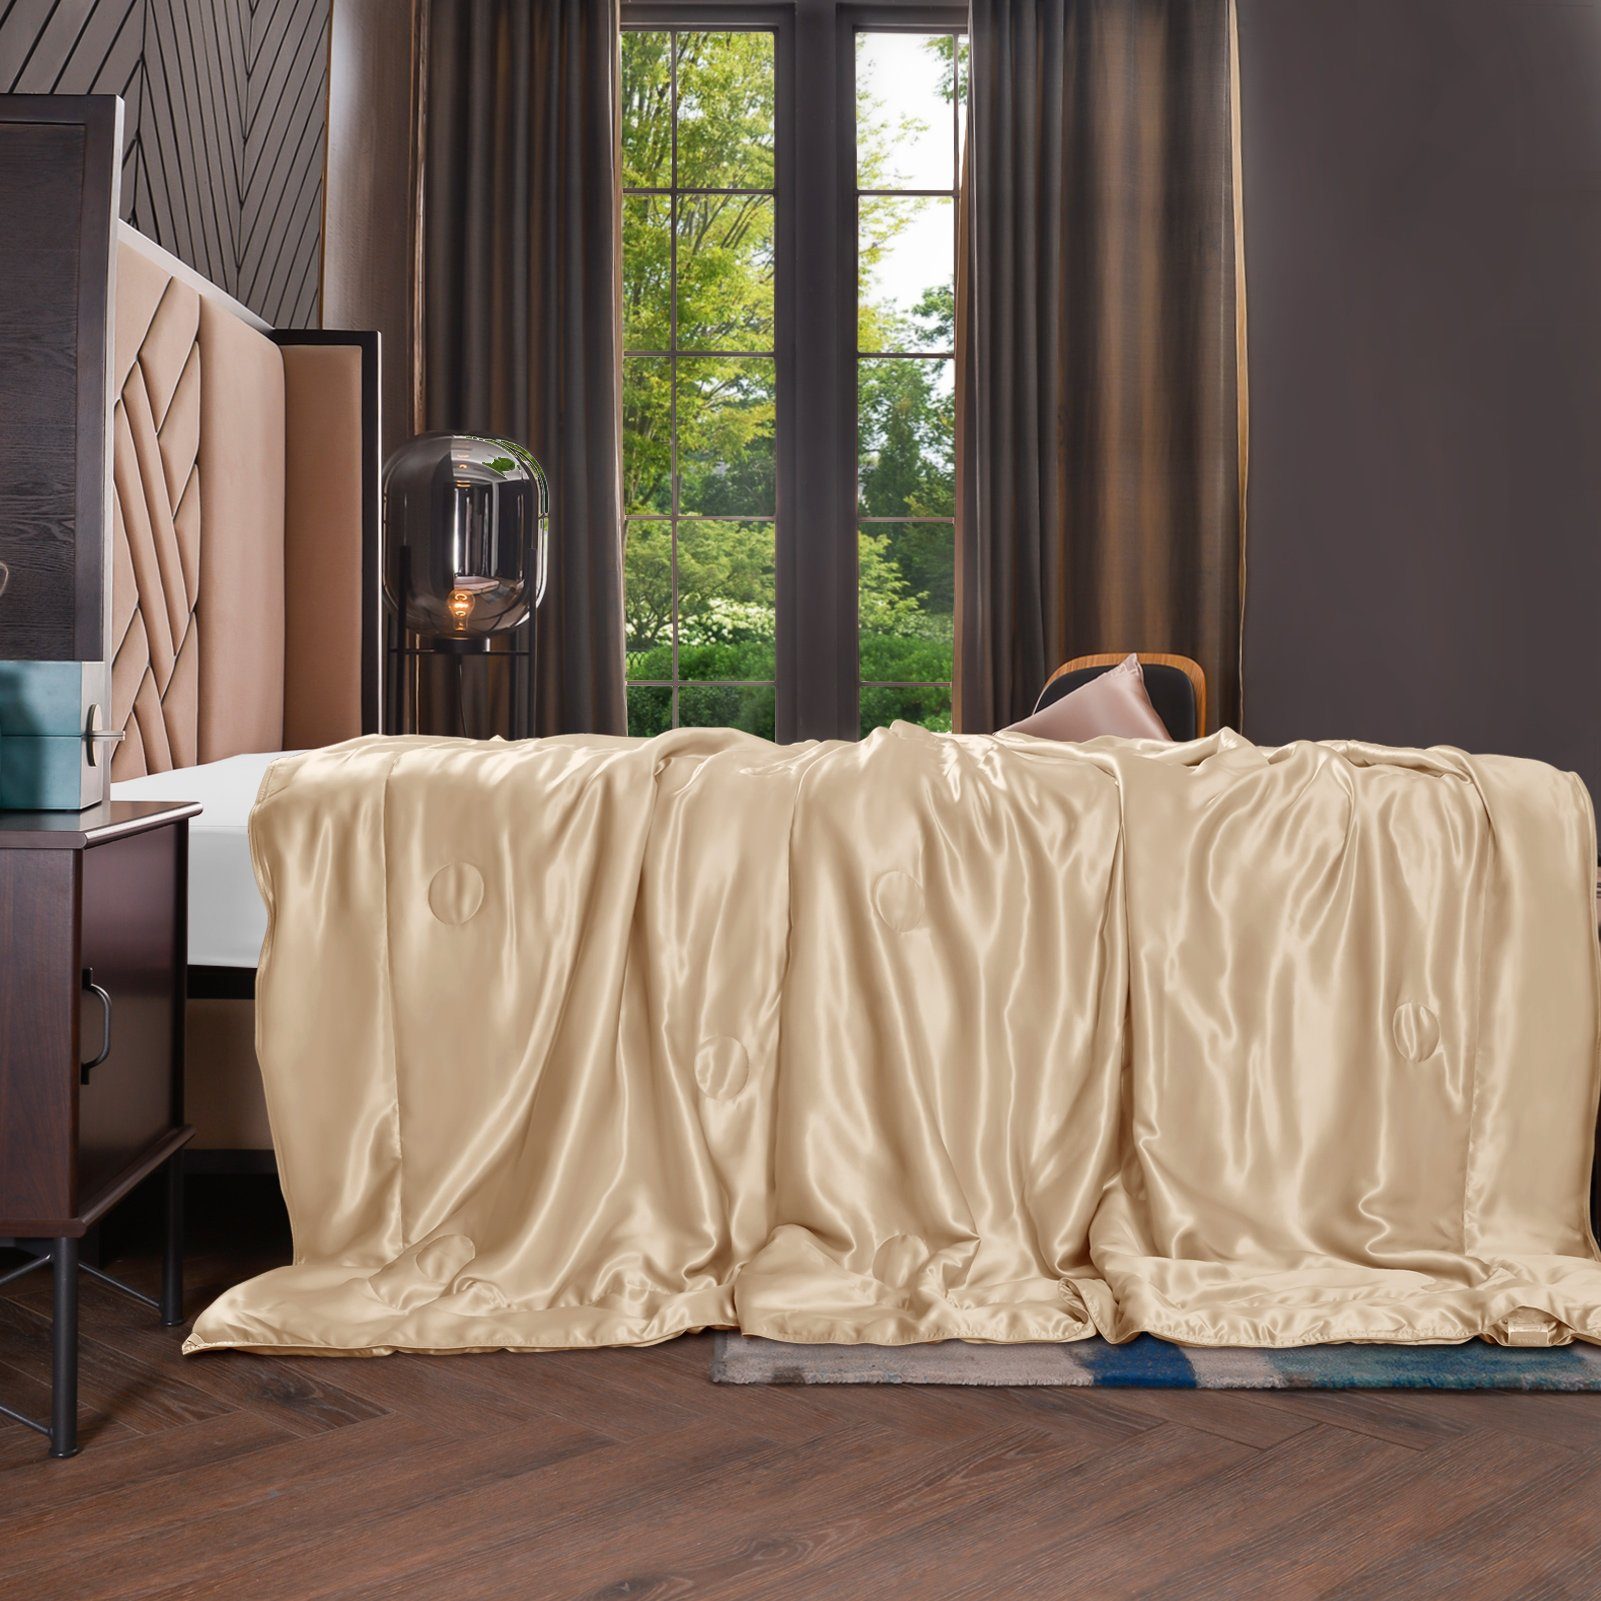 Sommerbettdecke, 135x180 cm, THXSILK, Füllung: 100% Seide, Bezug: 100% Seide, kühlend, leicht, hautfreundlich Golden | Naturfaserdecken